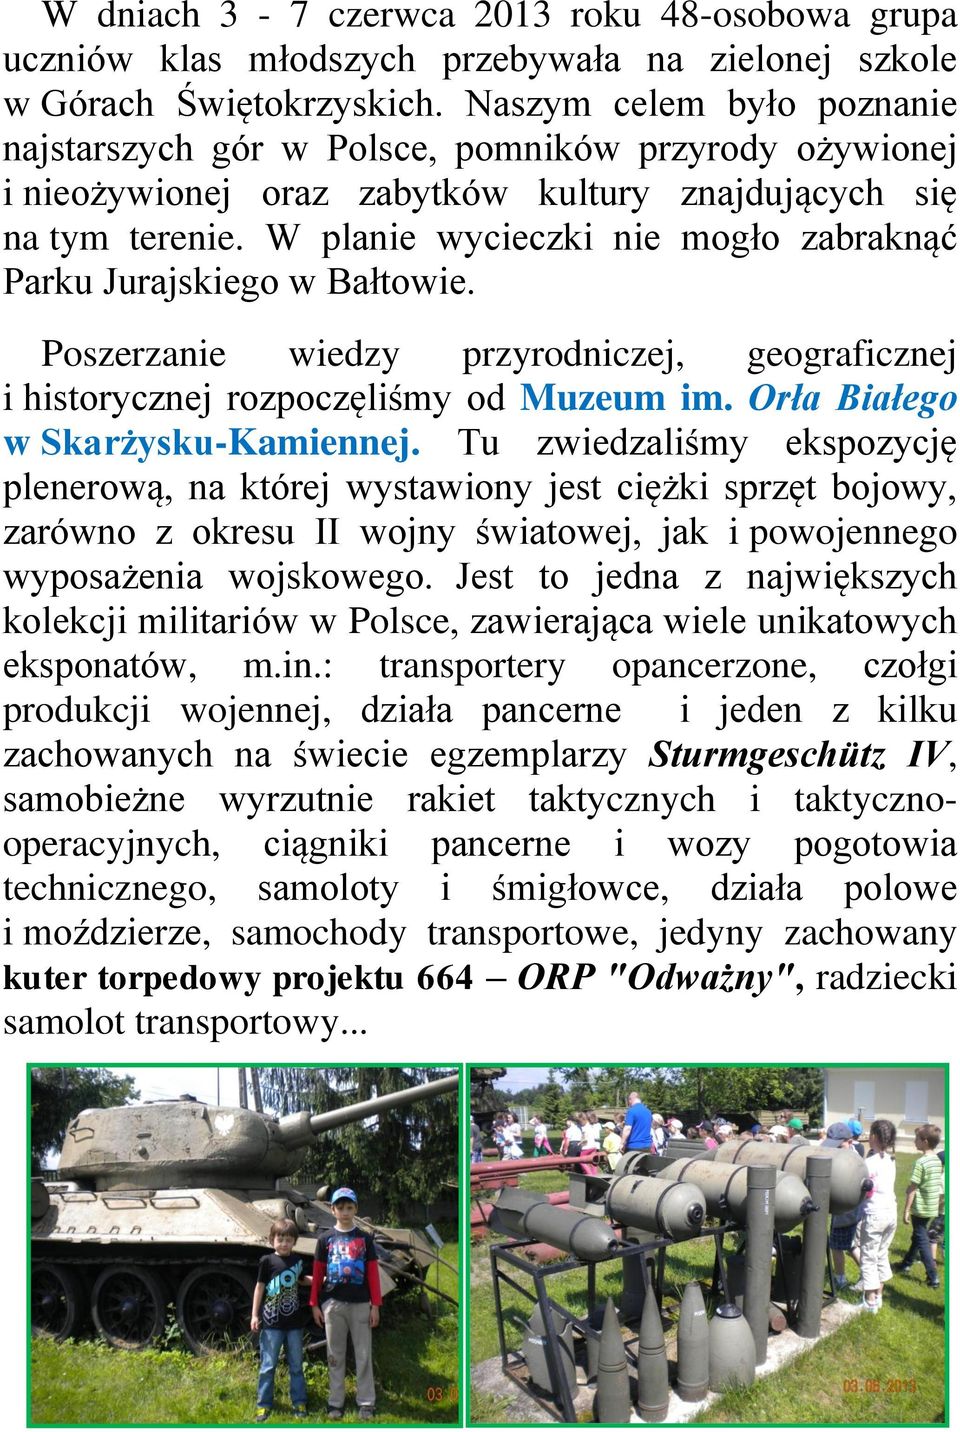 W planie wycieczki nie mogło zabraknąć Parku Jurajskiego w Bałtowie. Poszerzanie wiedzy przyrodniczej, geograficznej i historycznej rozpoczęliśmy od Muzeum im. Orła Białego w Skarżysku-Kamiennej.